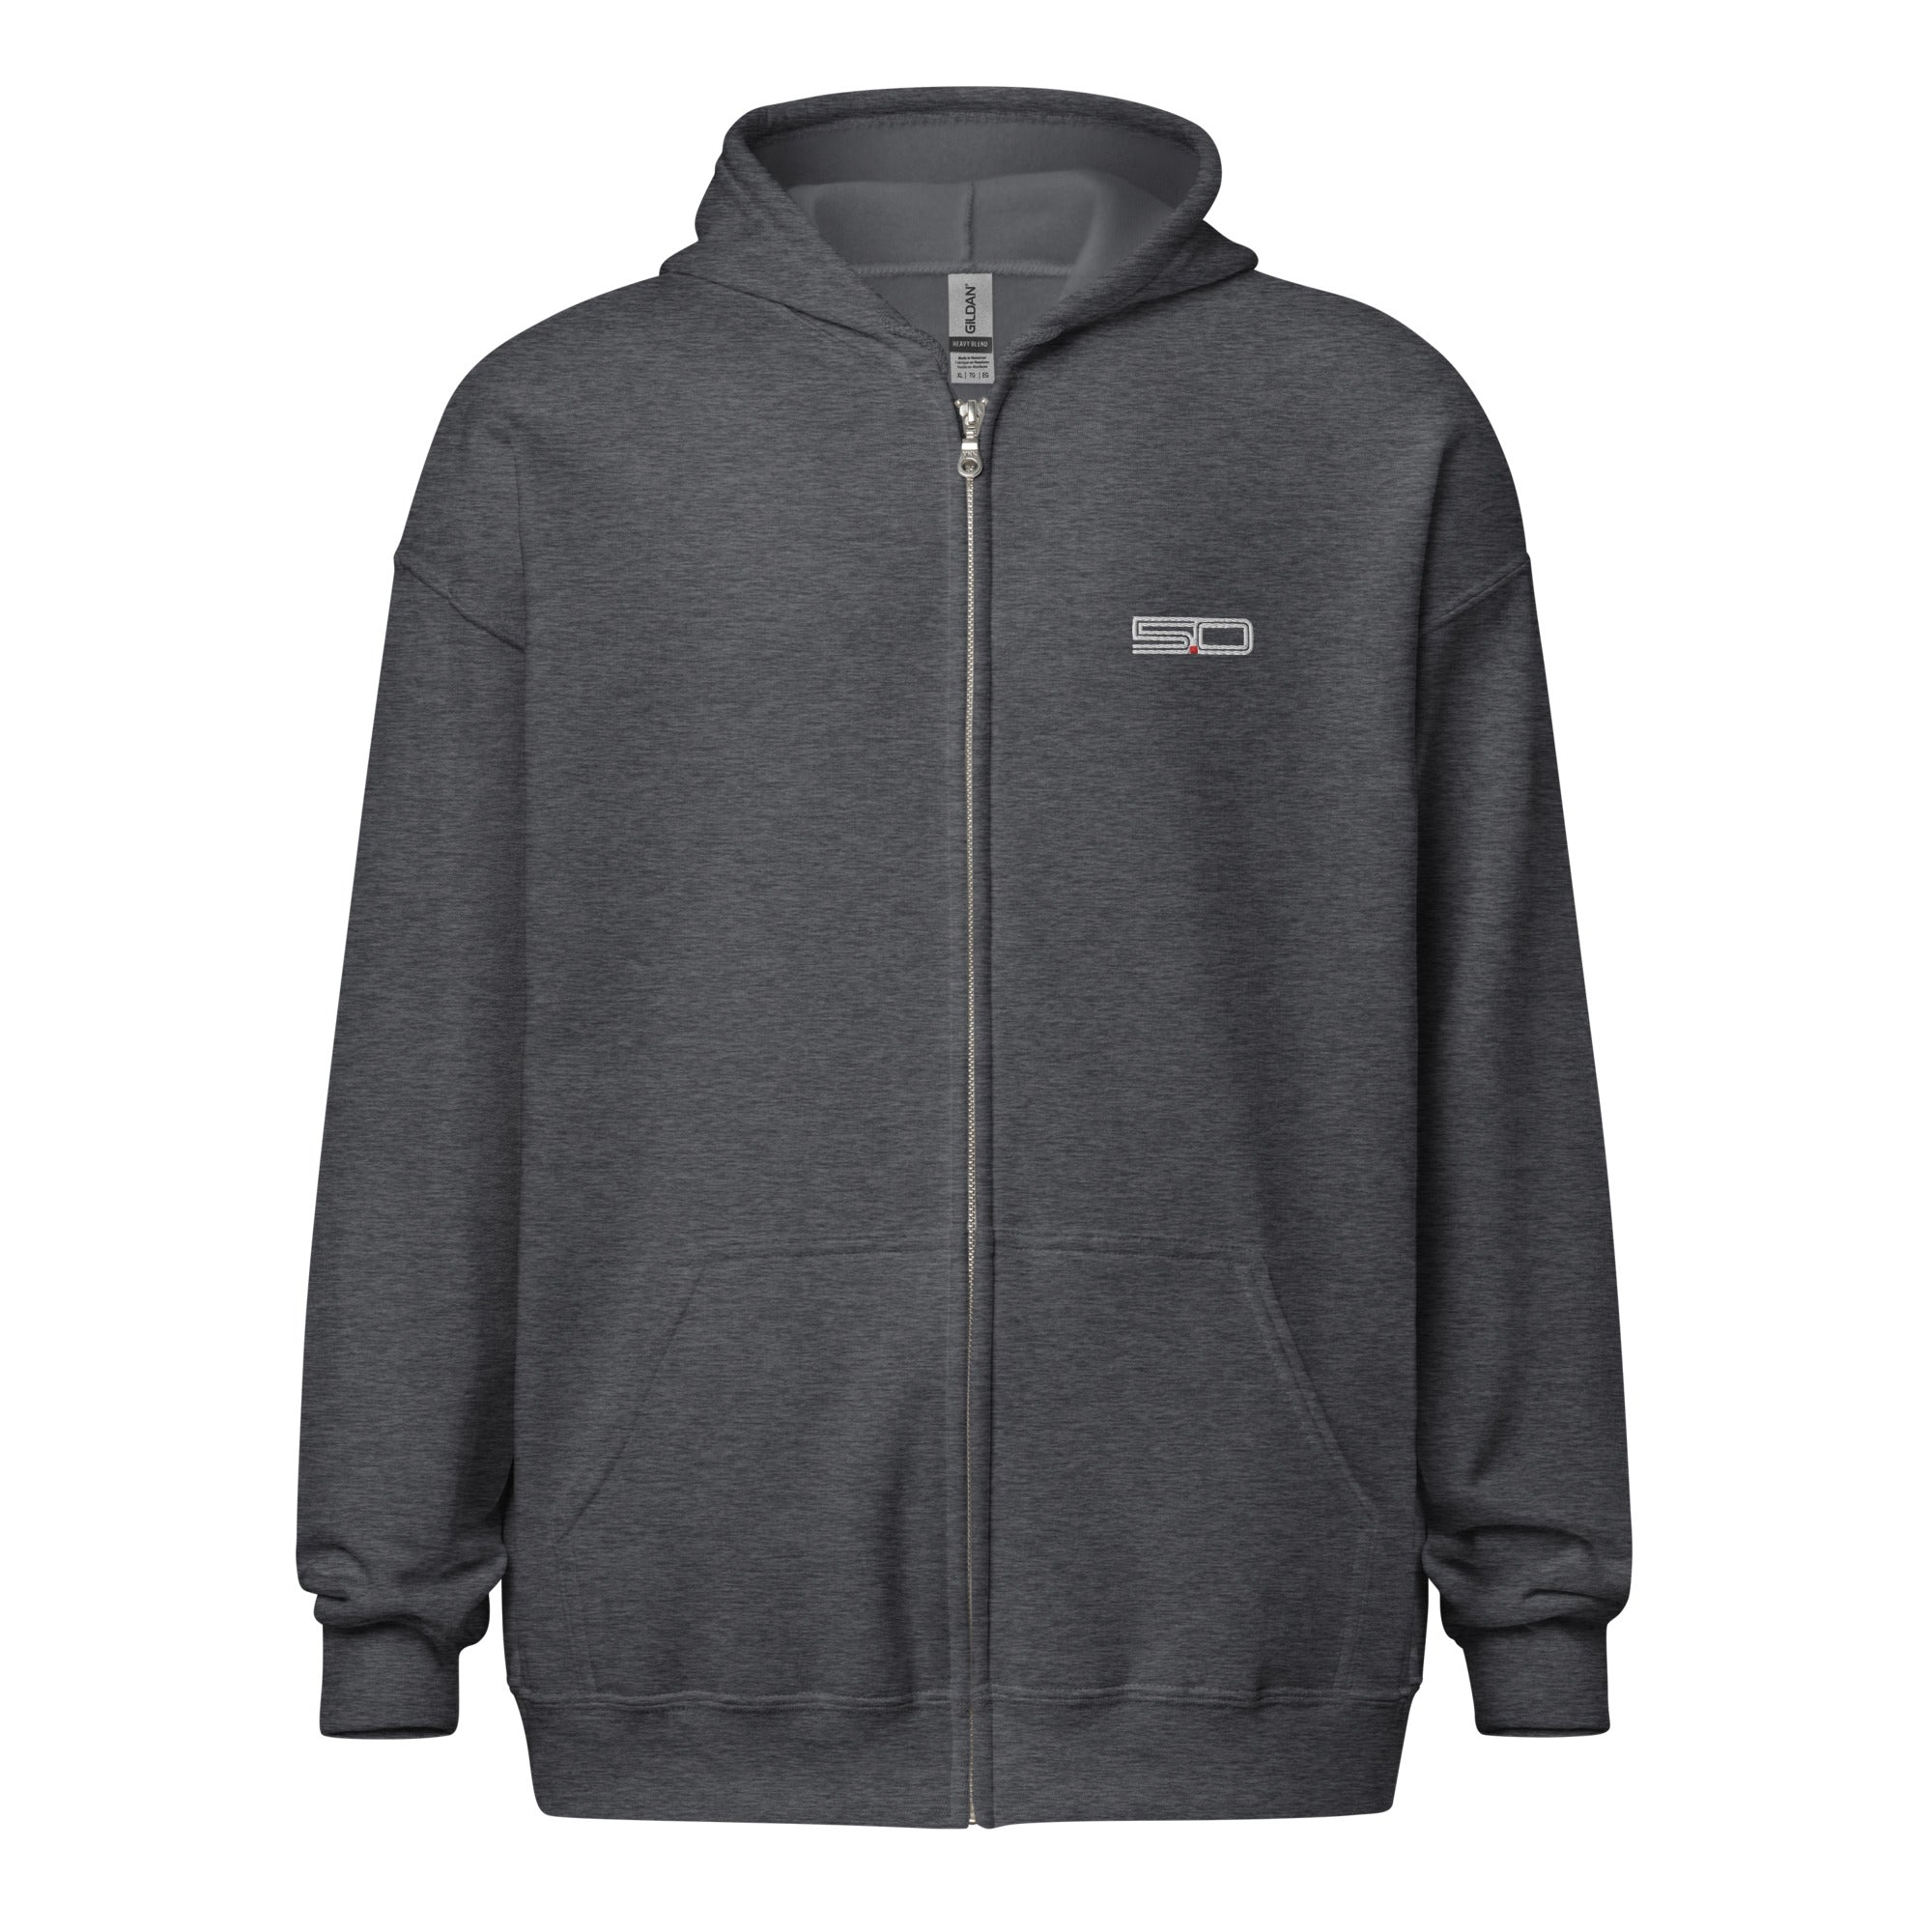 5.0 heavy blend zip hoodie